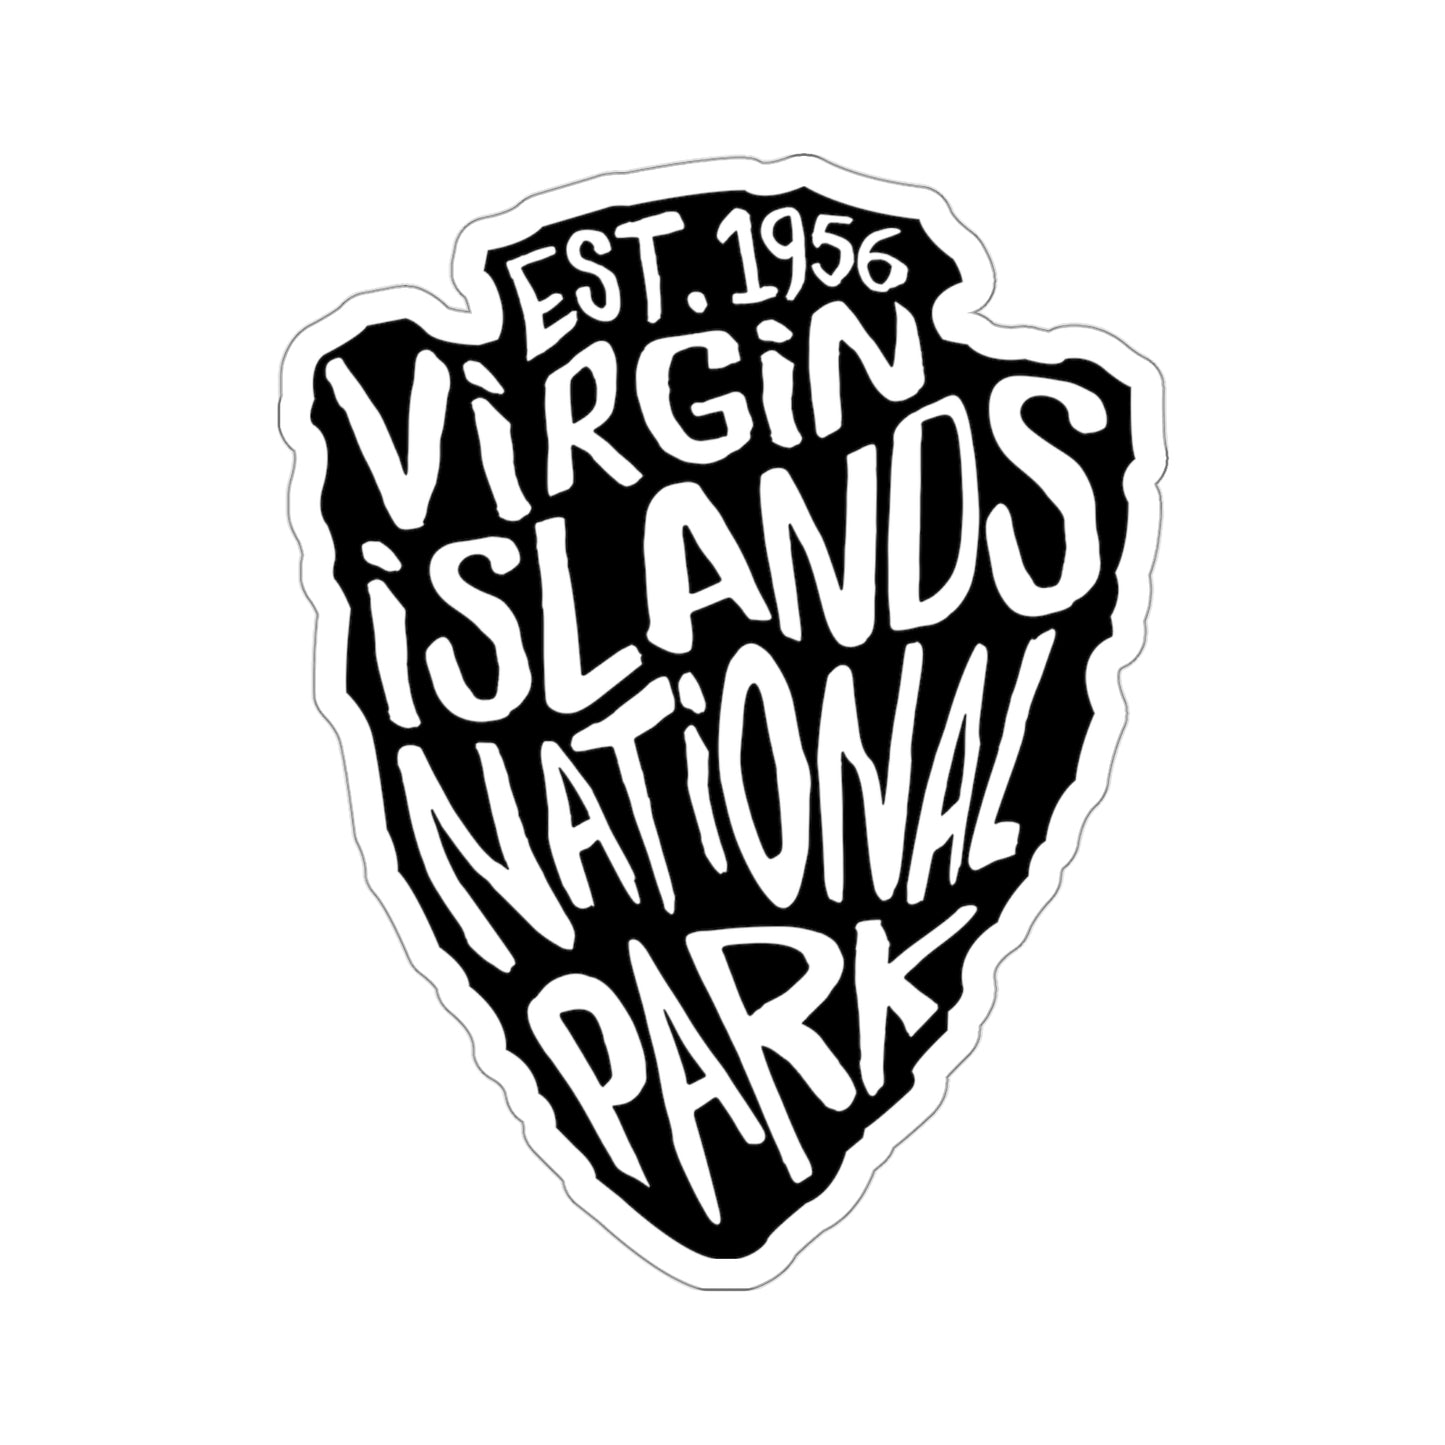 Virgin Islands National Park Sticker - Arrow Head Design